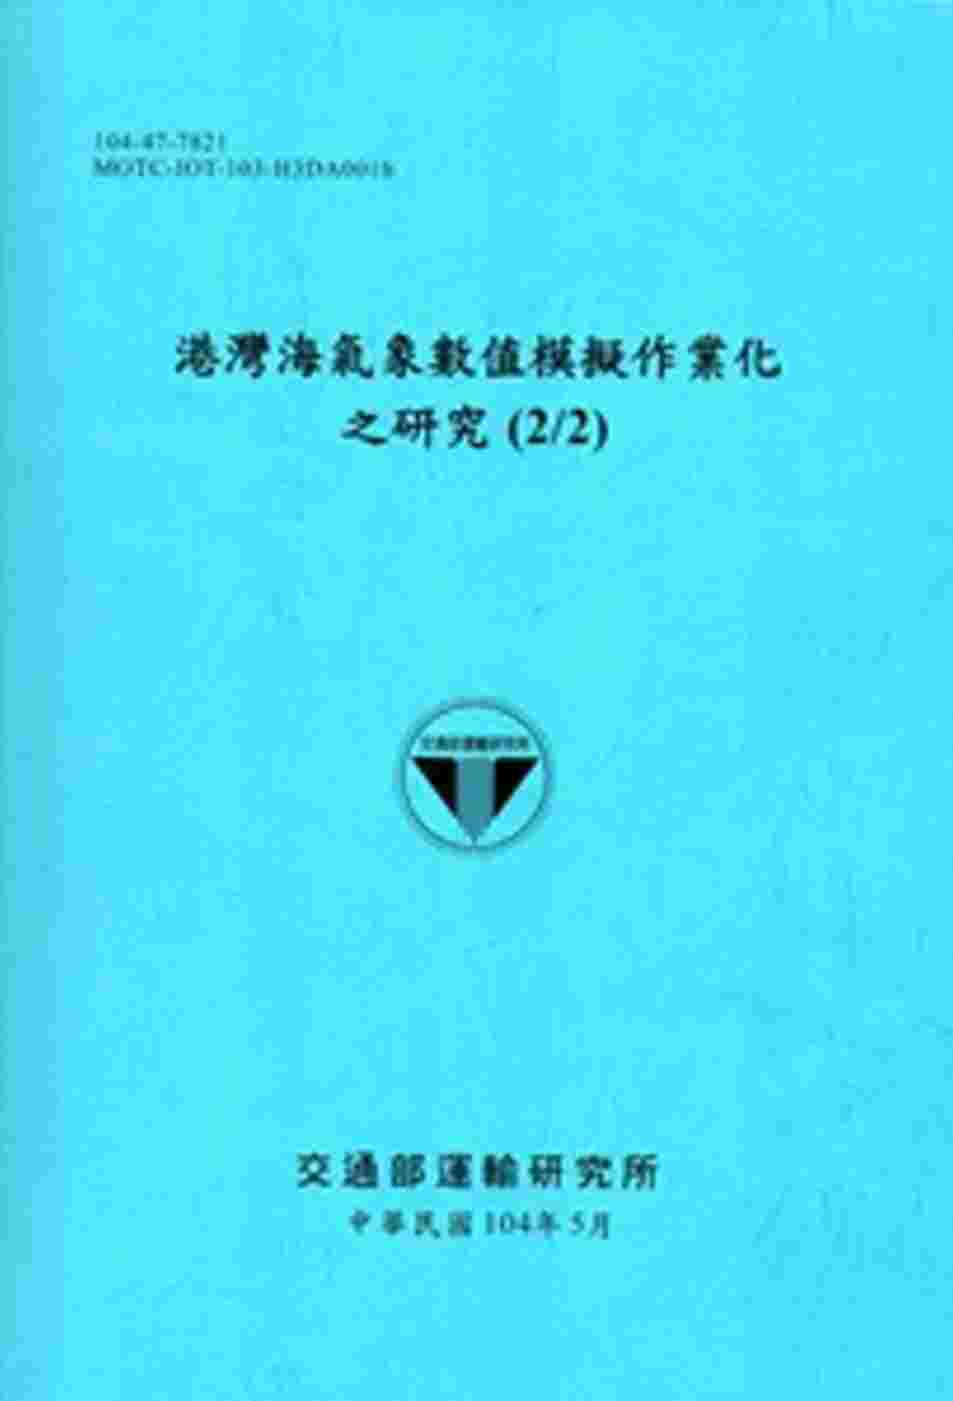 港灣海氣象數值模擬作業化之研究(2/2)[104藍]